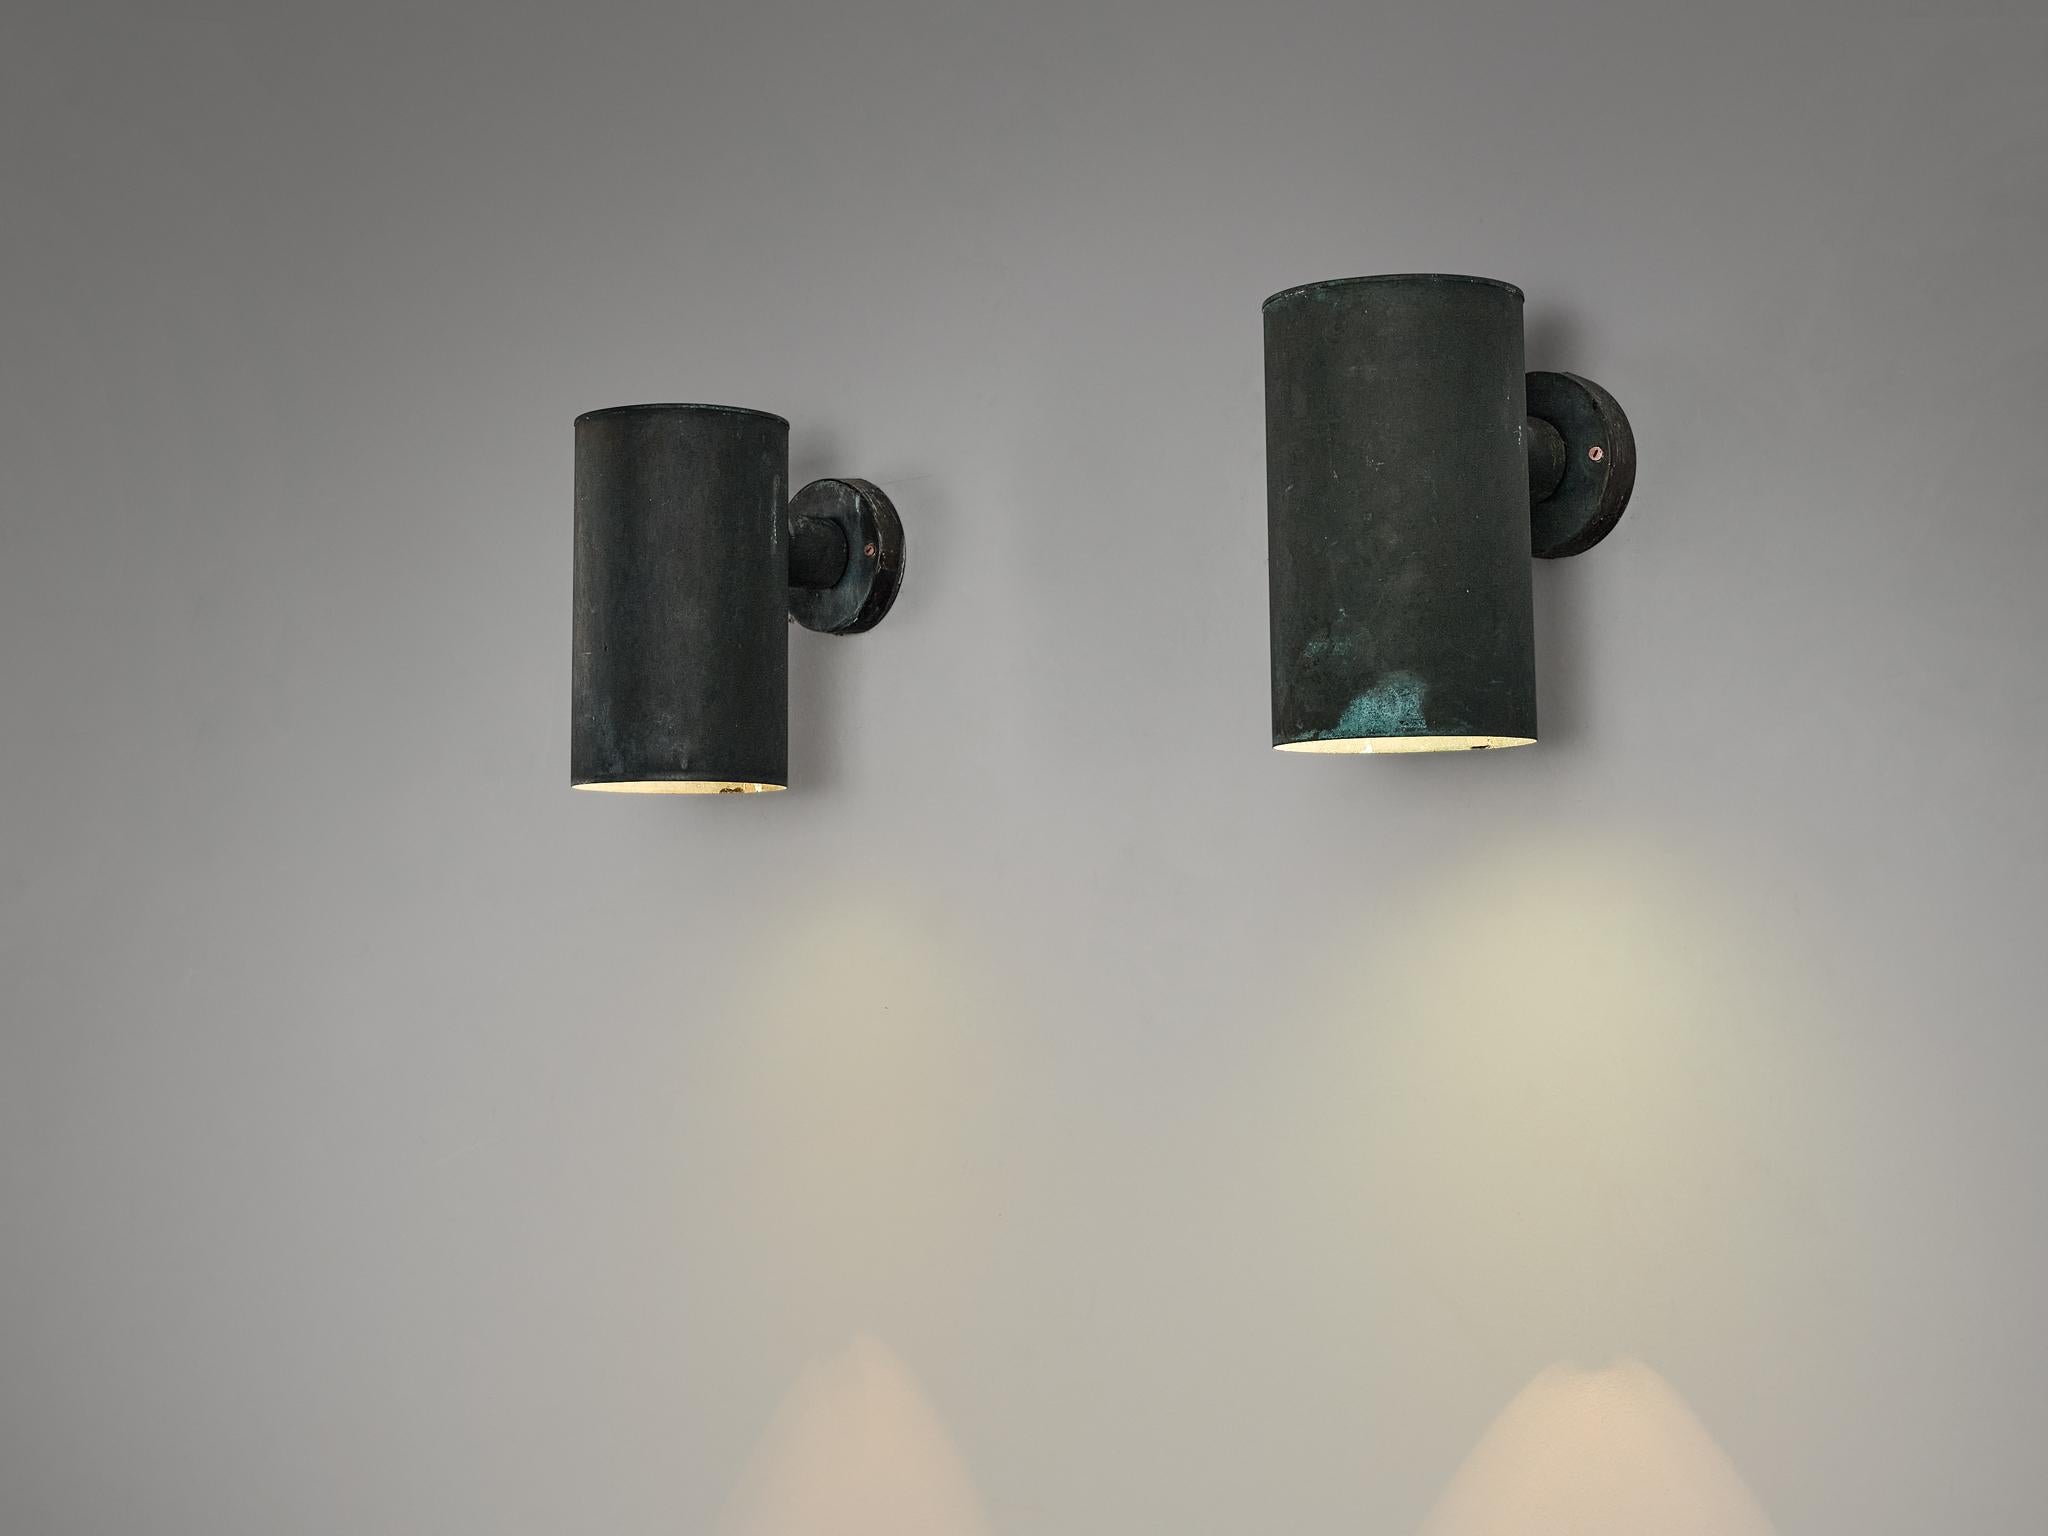 Fagerhult, Wandleuchten, Kupfer, Schweden, 1960er Jahre.

Dieses Design zeichnet sich durch einen zylindrischen Lampenschirm aus, der mit einer runden Halterung verbunden ist. Die Oberfläche erhielt im Laufe der Jahre eine bewundernswerte Patina,